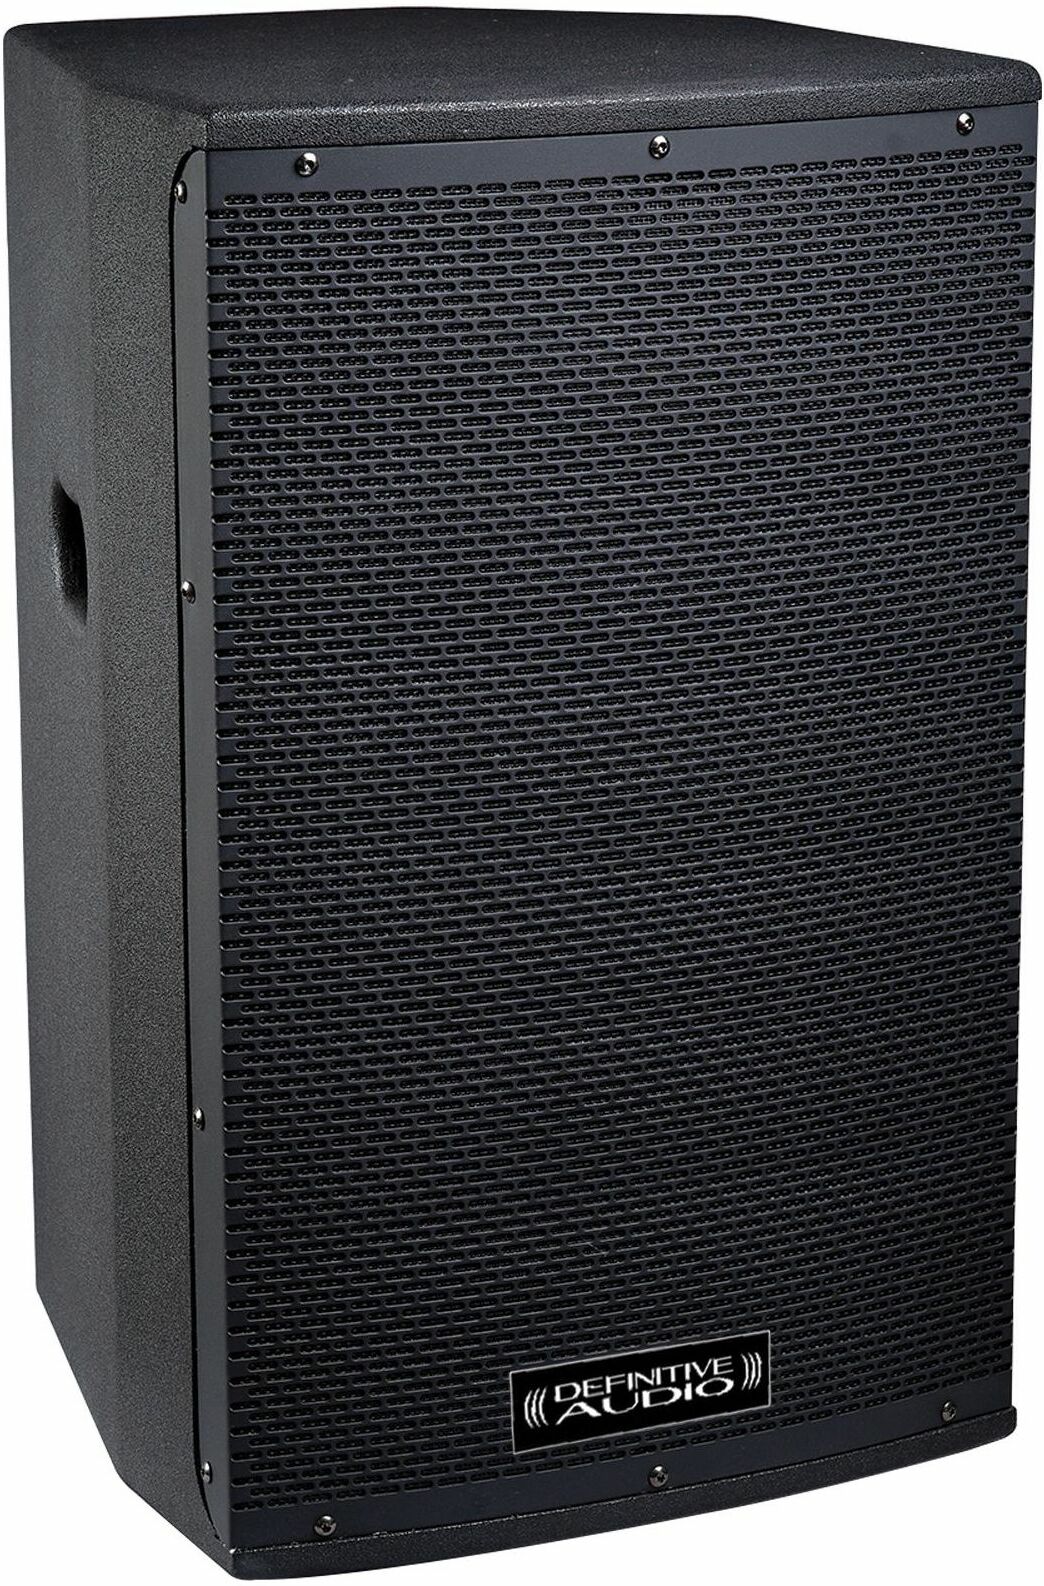 Definitive Audio Koala 12aw Dsp - Active full-range speaker - Main picture